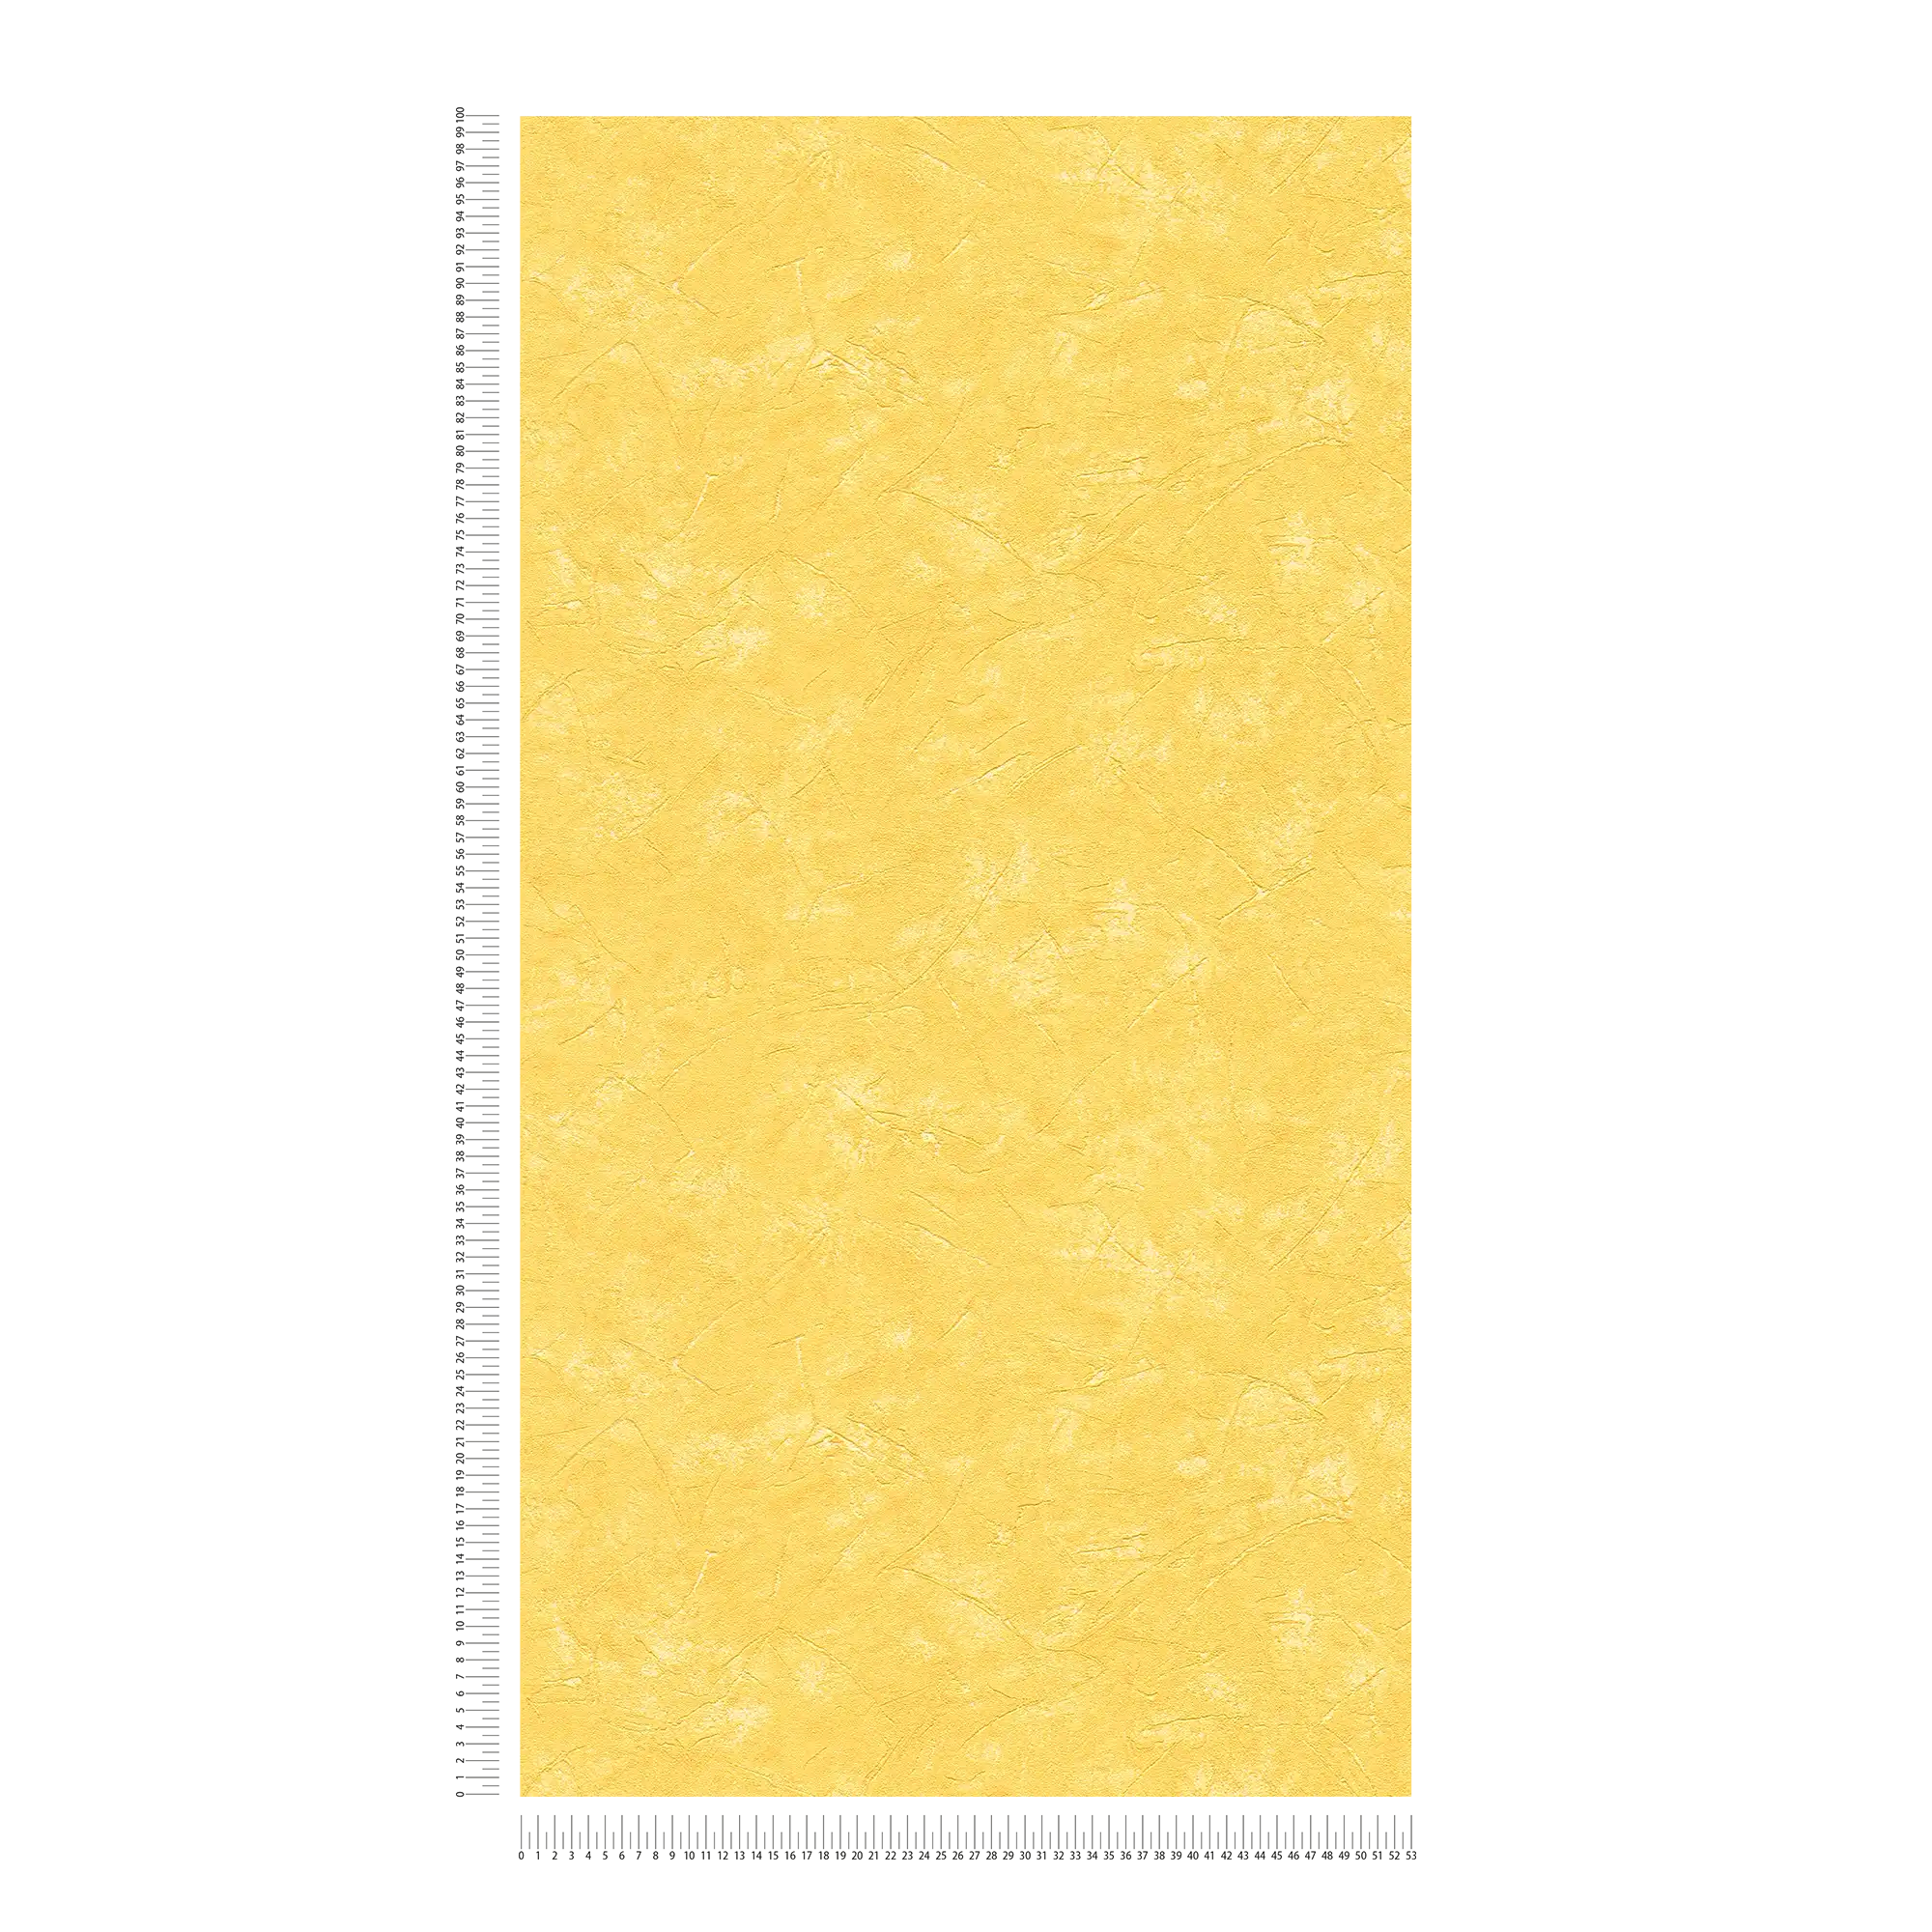             Carta da parati in gesso ottico giallo sole in stile mediterraneo
        